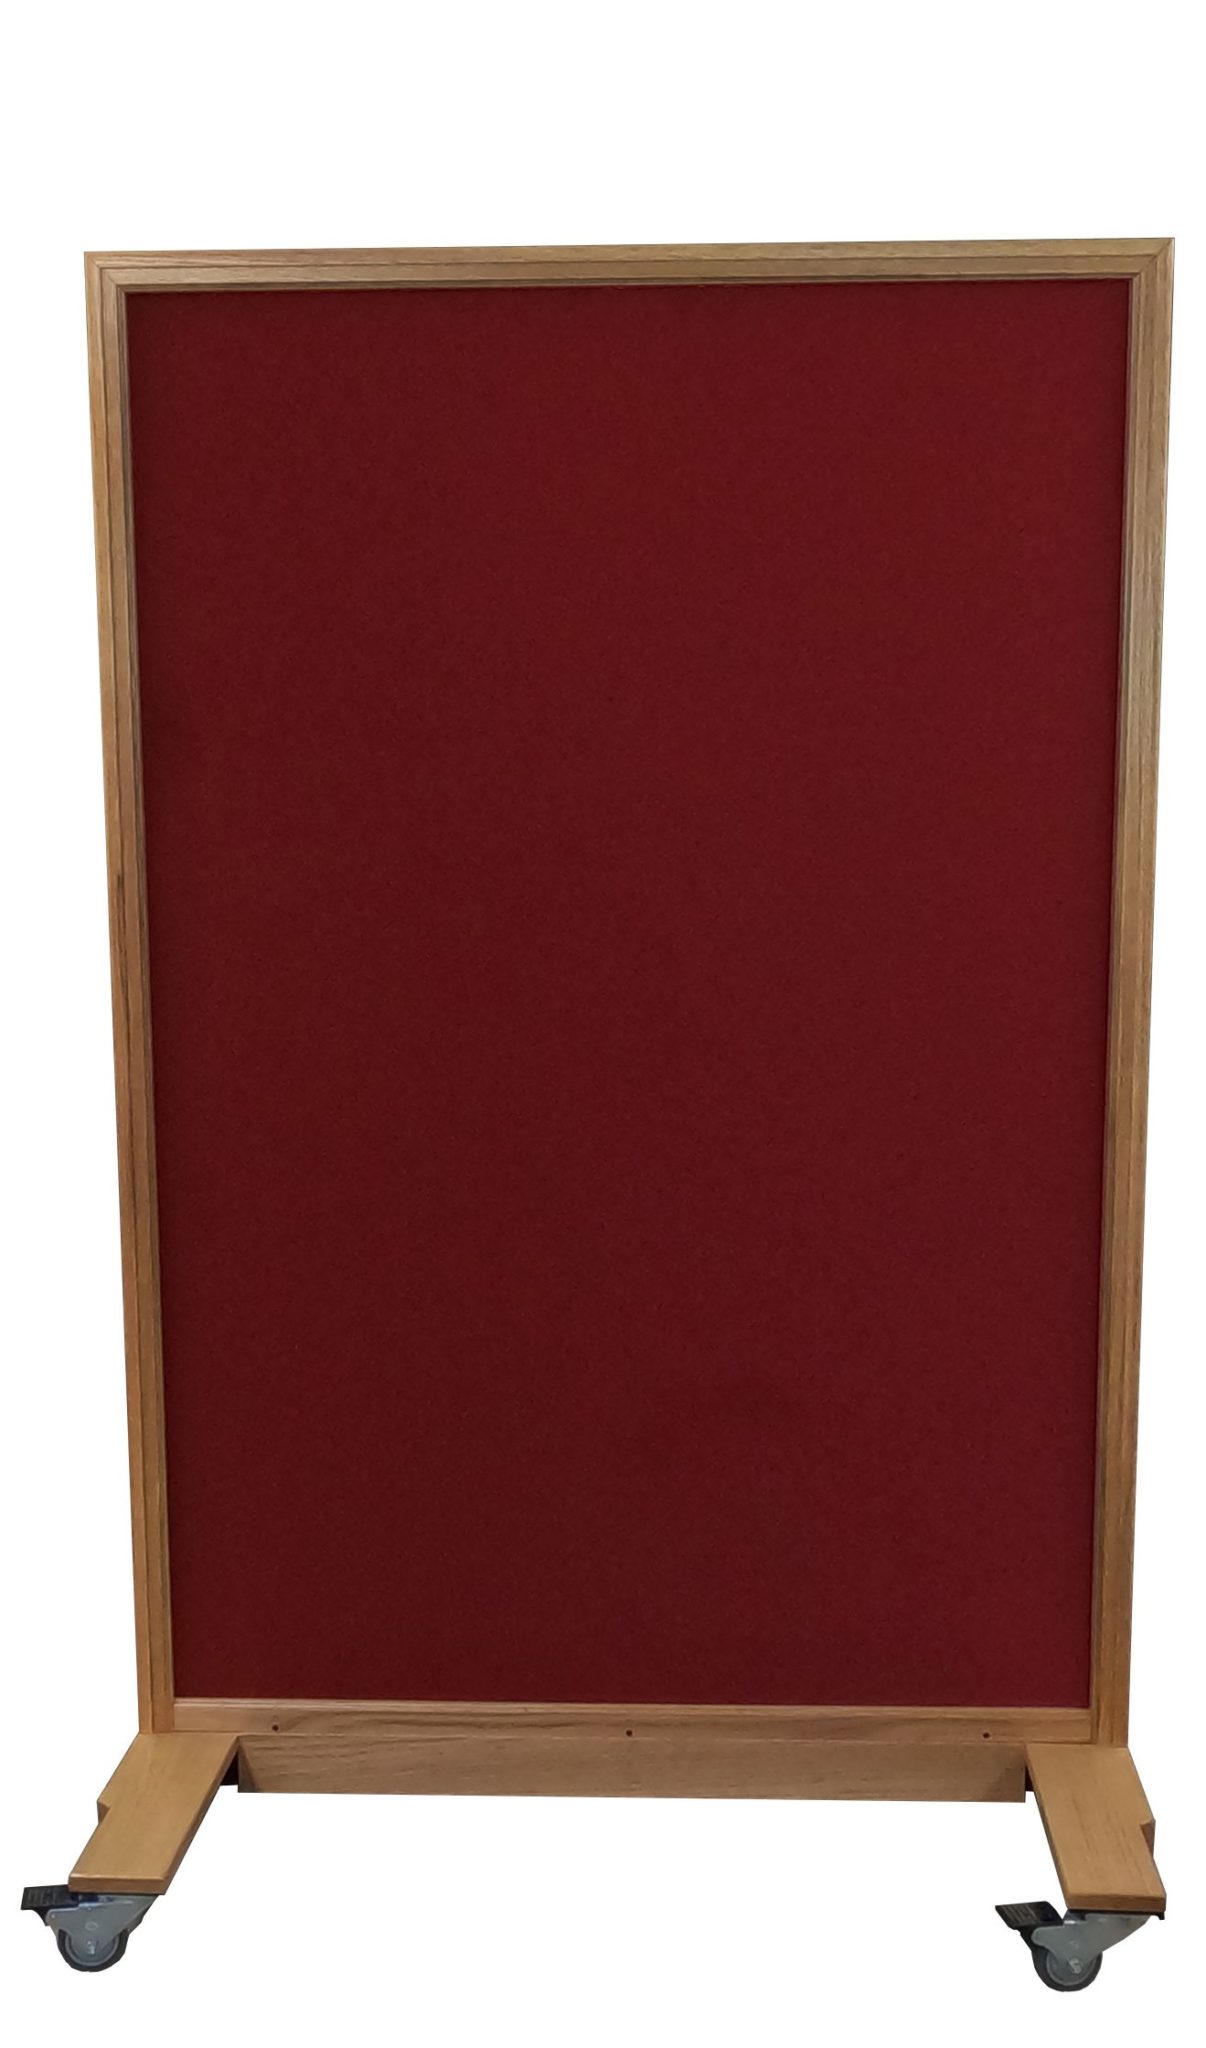 TTABP075-OM-RD Tactical-Tackable Oak Medium Red Fabric